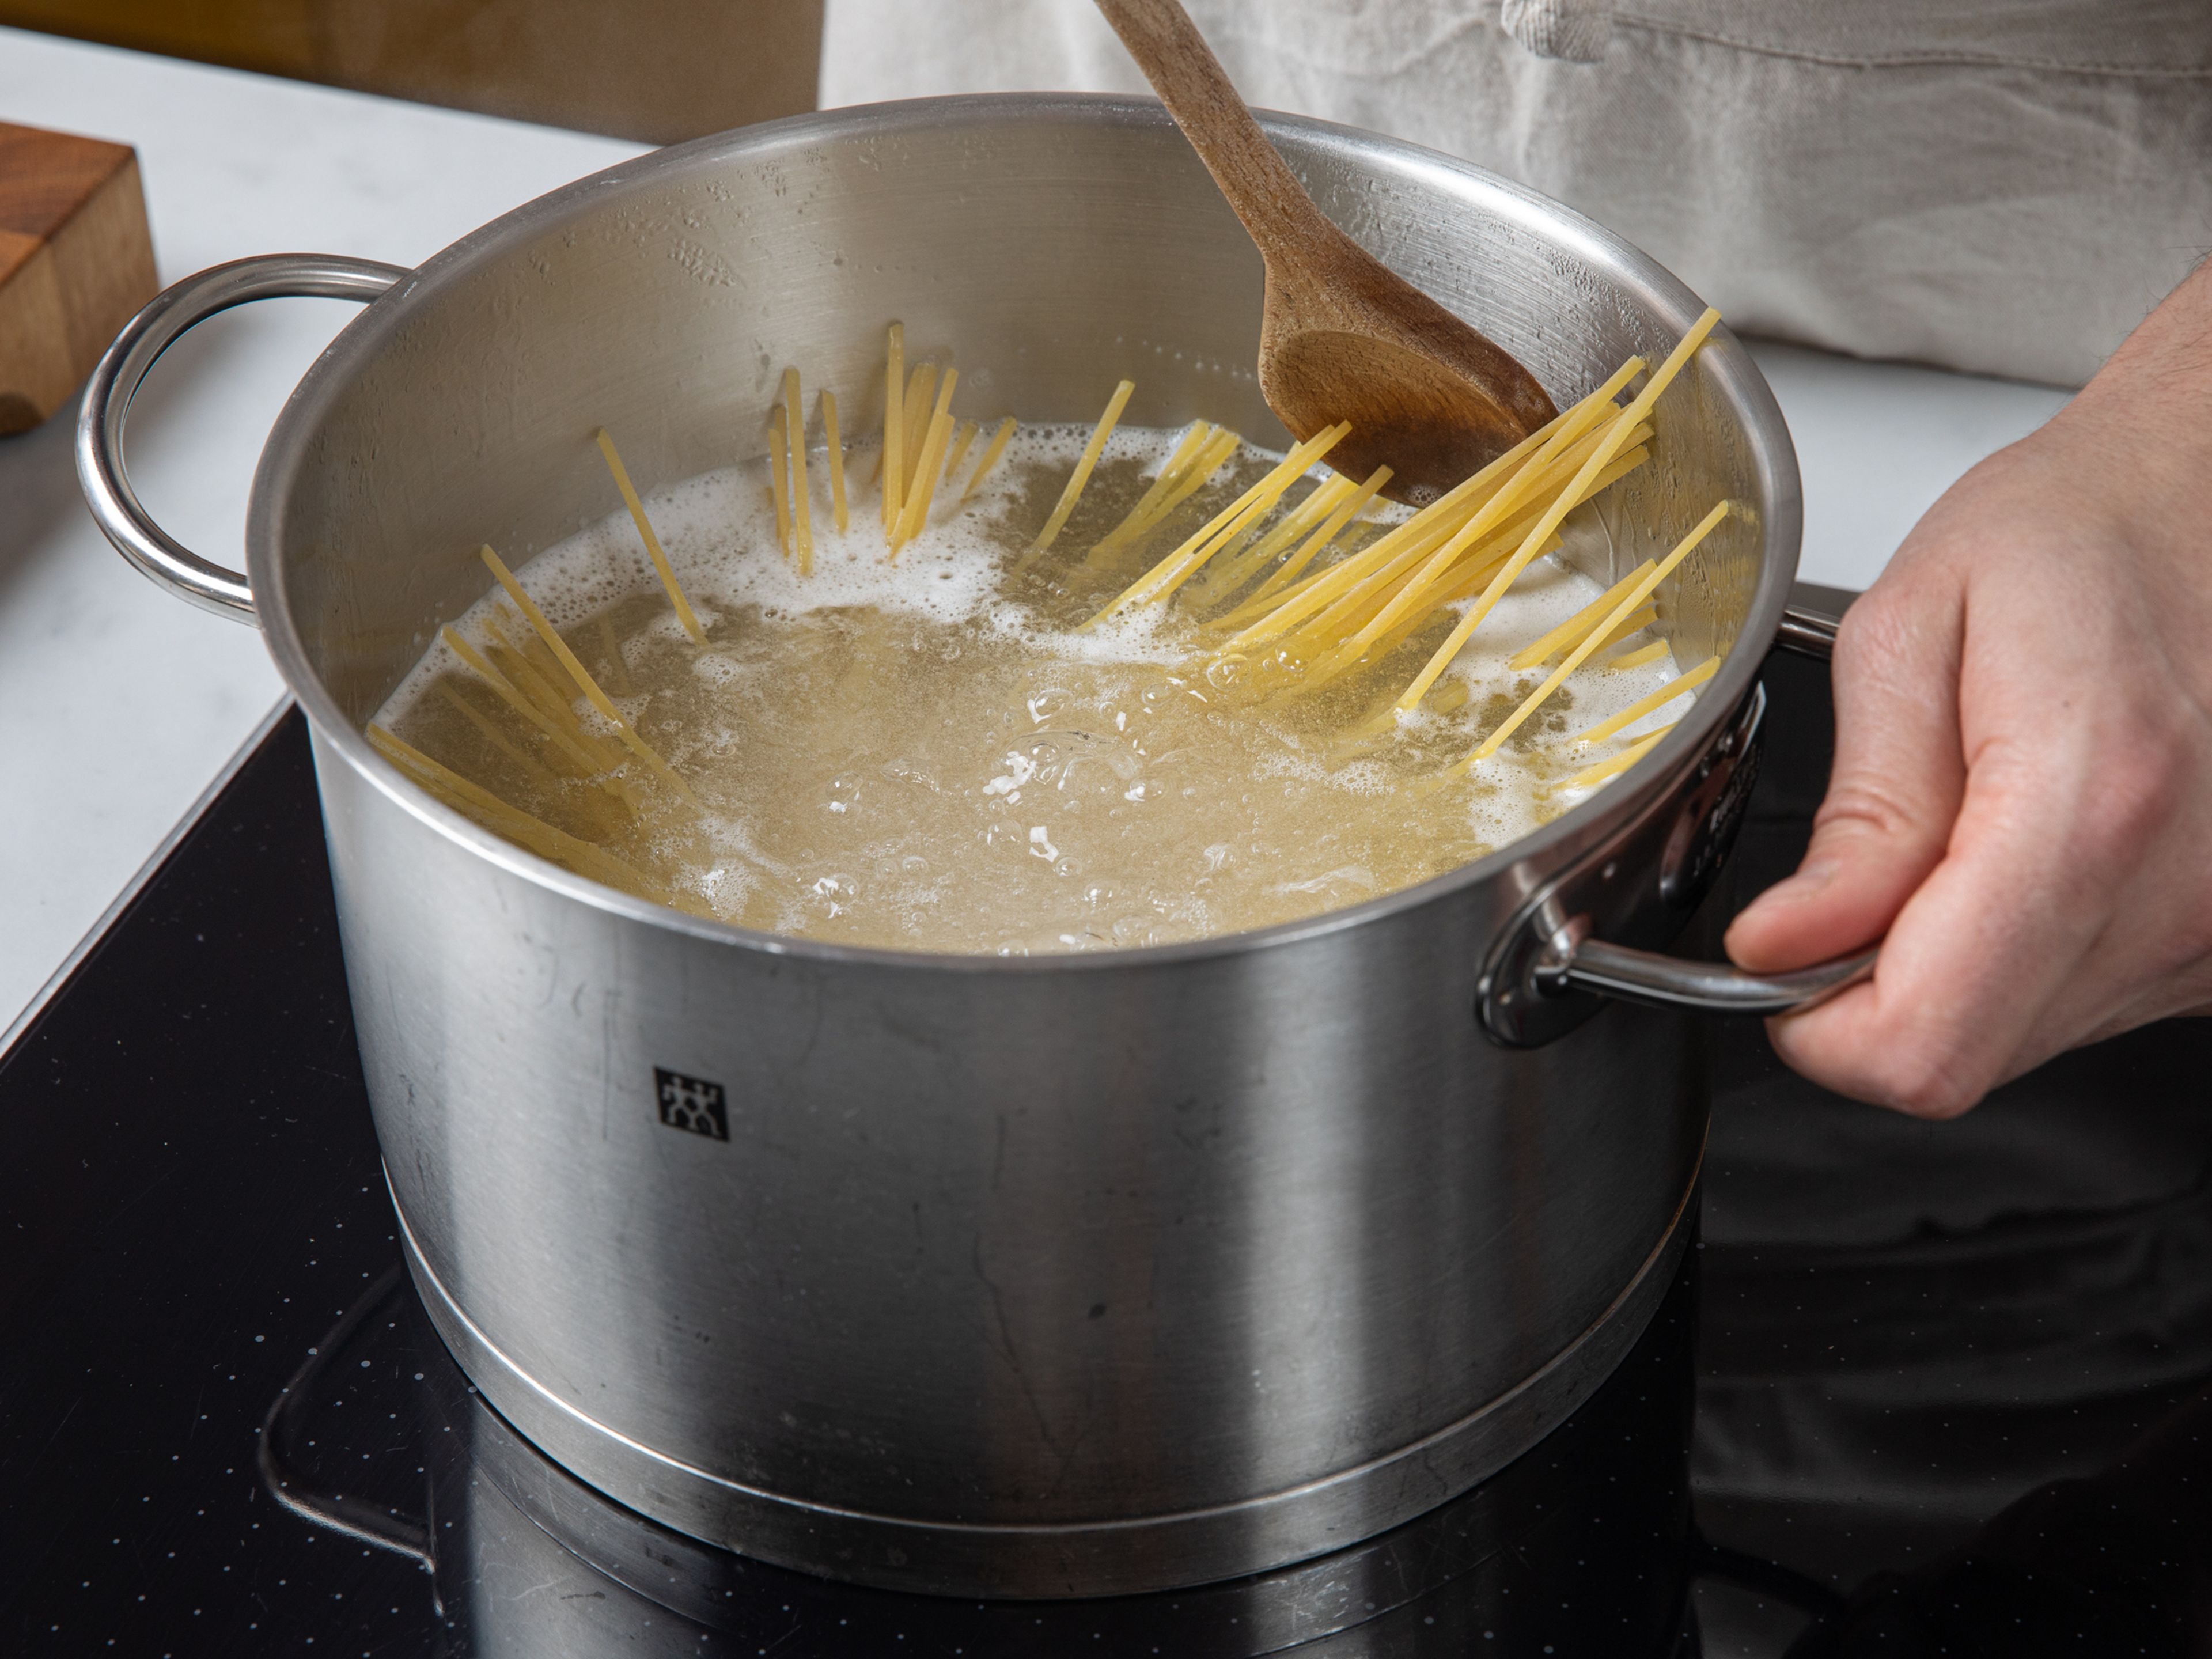 Den großen Topf aus Schritt 1 mit reichlich Wasser füllen, ausreichend Salz hinzufügen und zum Kochen bringen. Sobald das Wasser kocht, die Linguine hinzufügen und nach Packungsanweisung bissfest kochen. Einen kleinen Teil (ca. 100 ml) des Kochwassers aufheben und die Nudeln abgießen. Die Nudeln im Topf lassen.